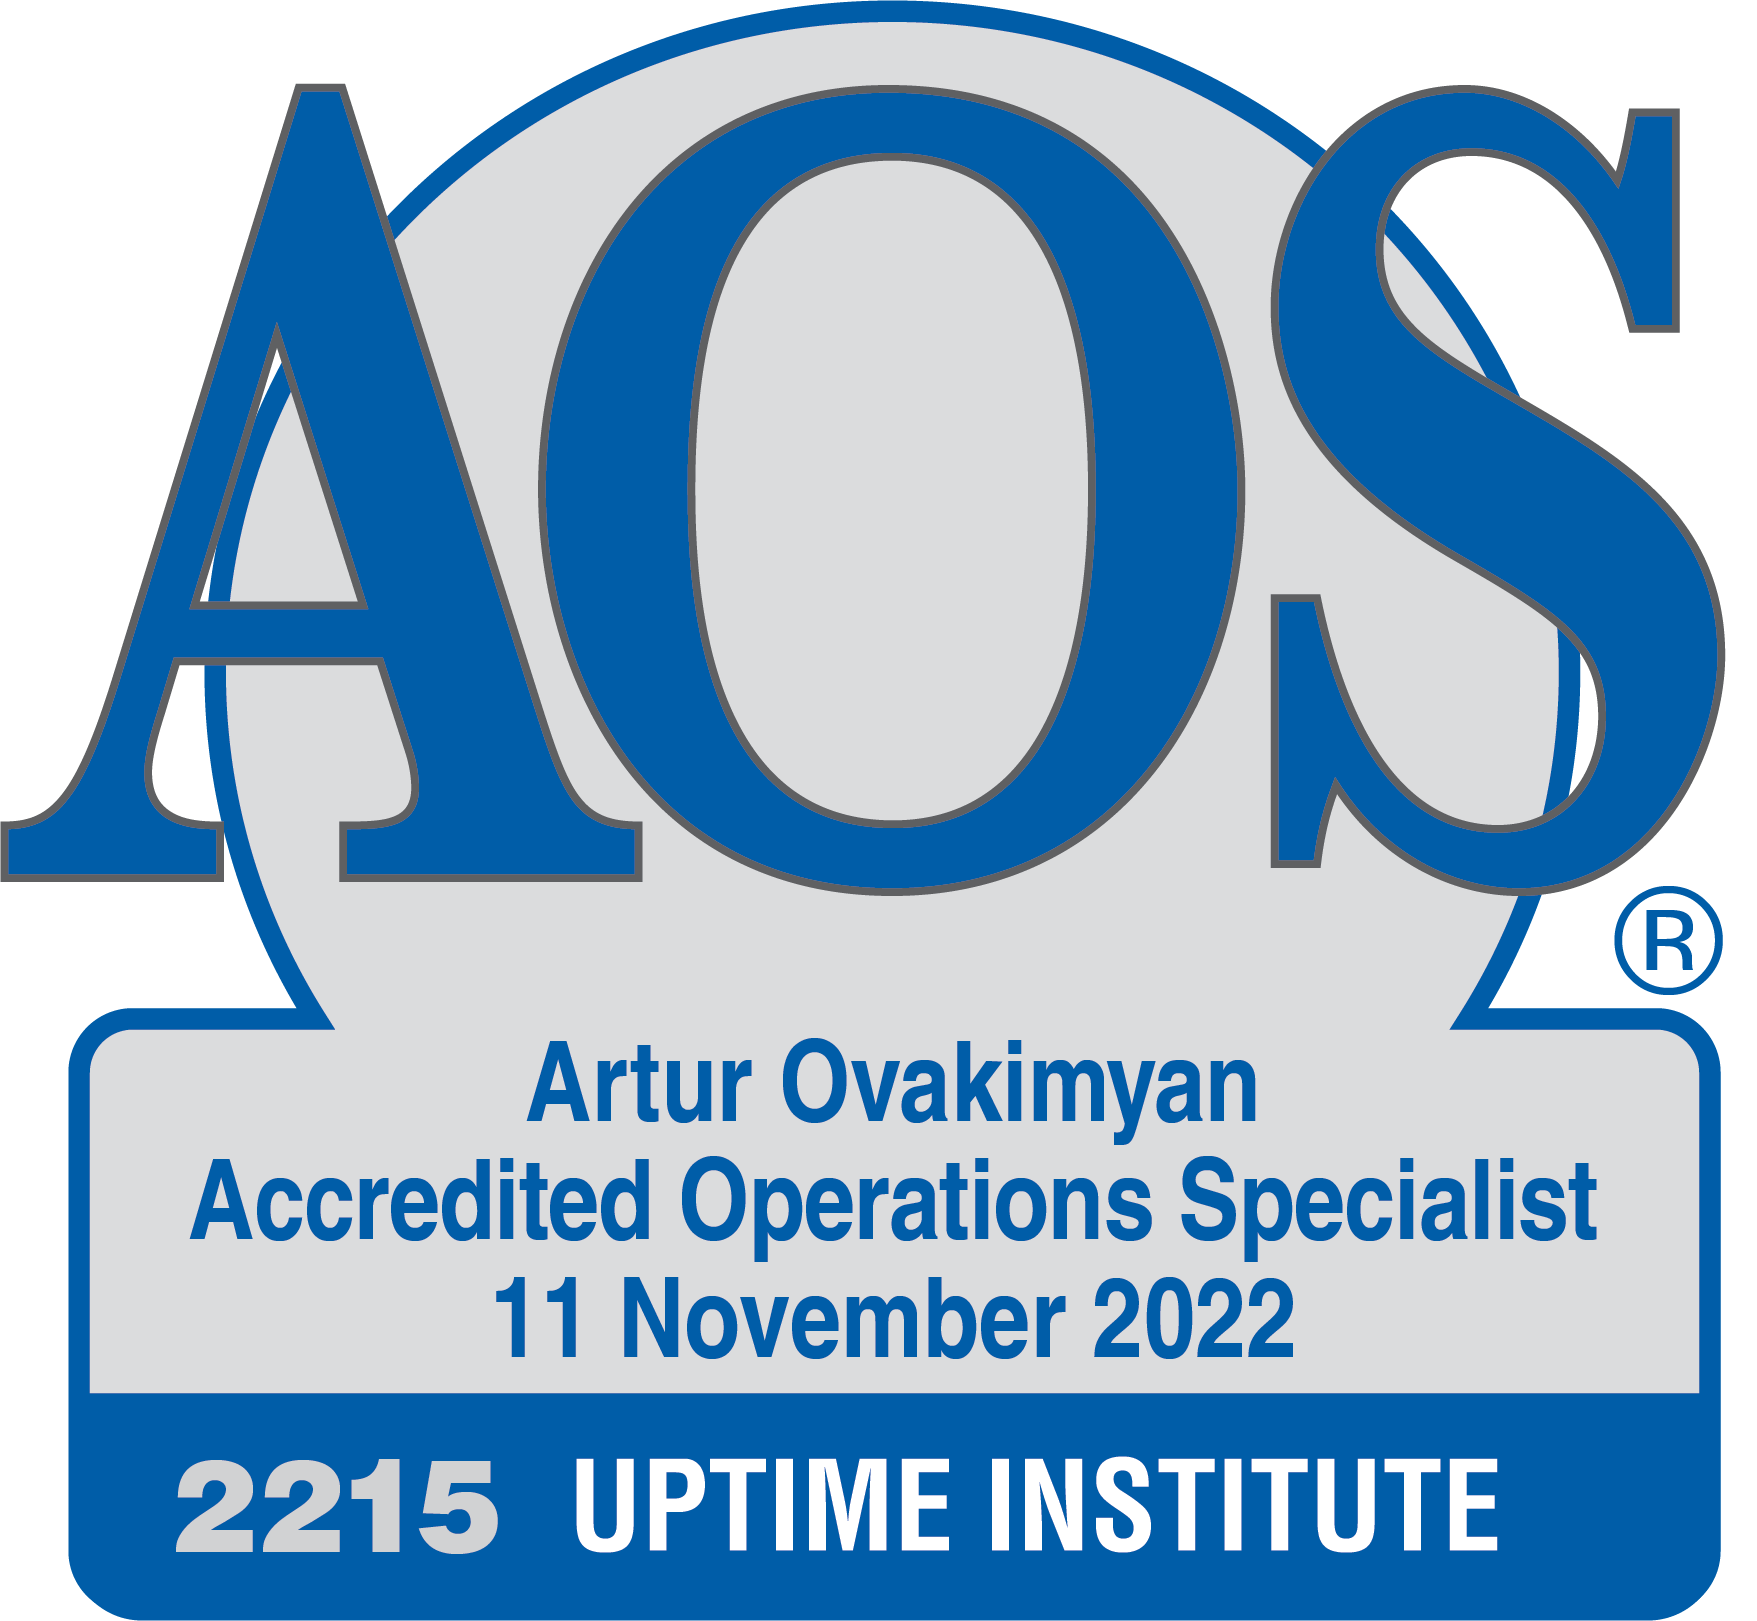 Руководитель отдела сервиса и сопровождения ИС ЦОД DataDome получил статус аккредитованного специалиста по операциям (AOS) от Uptime Institute.